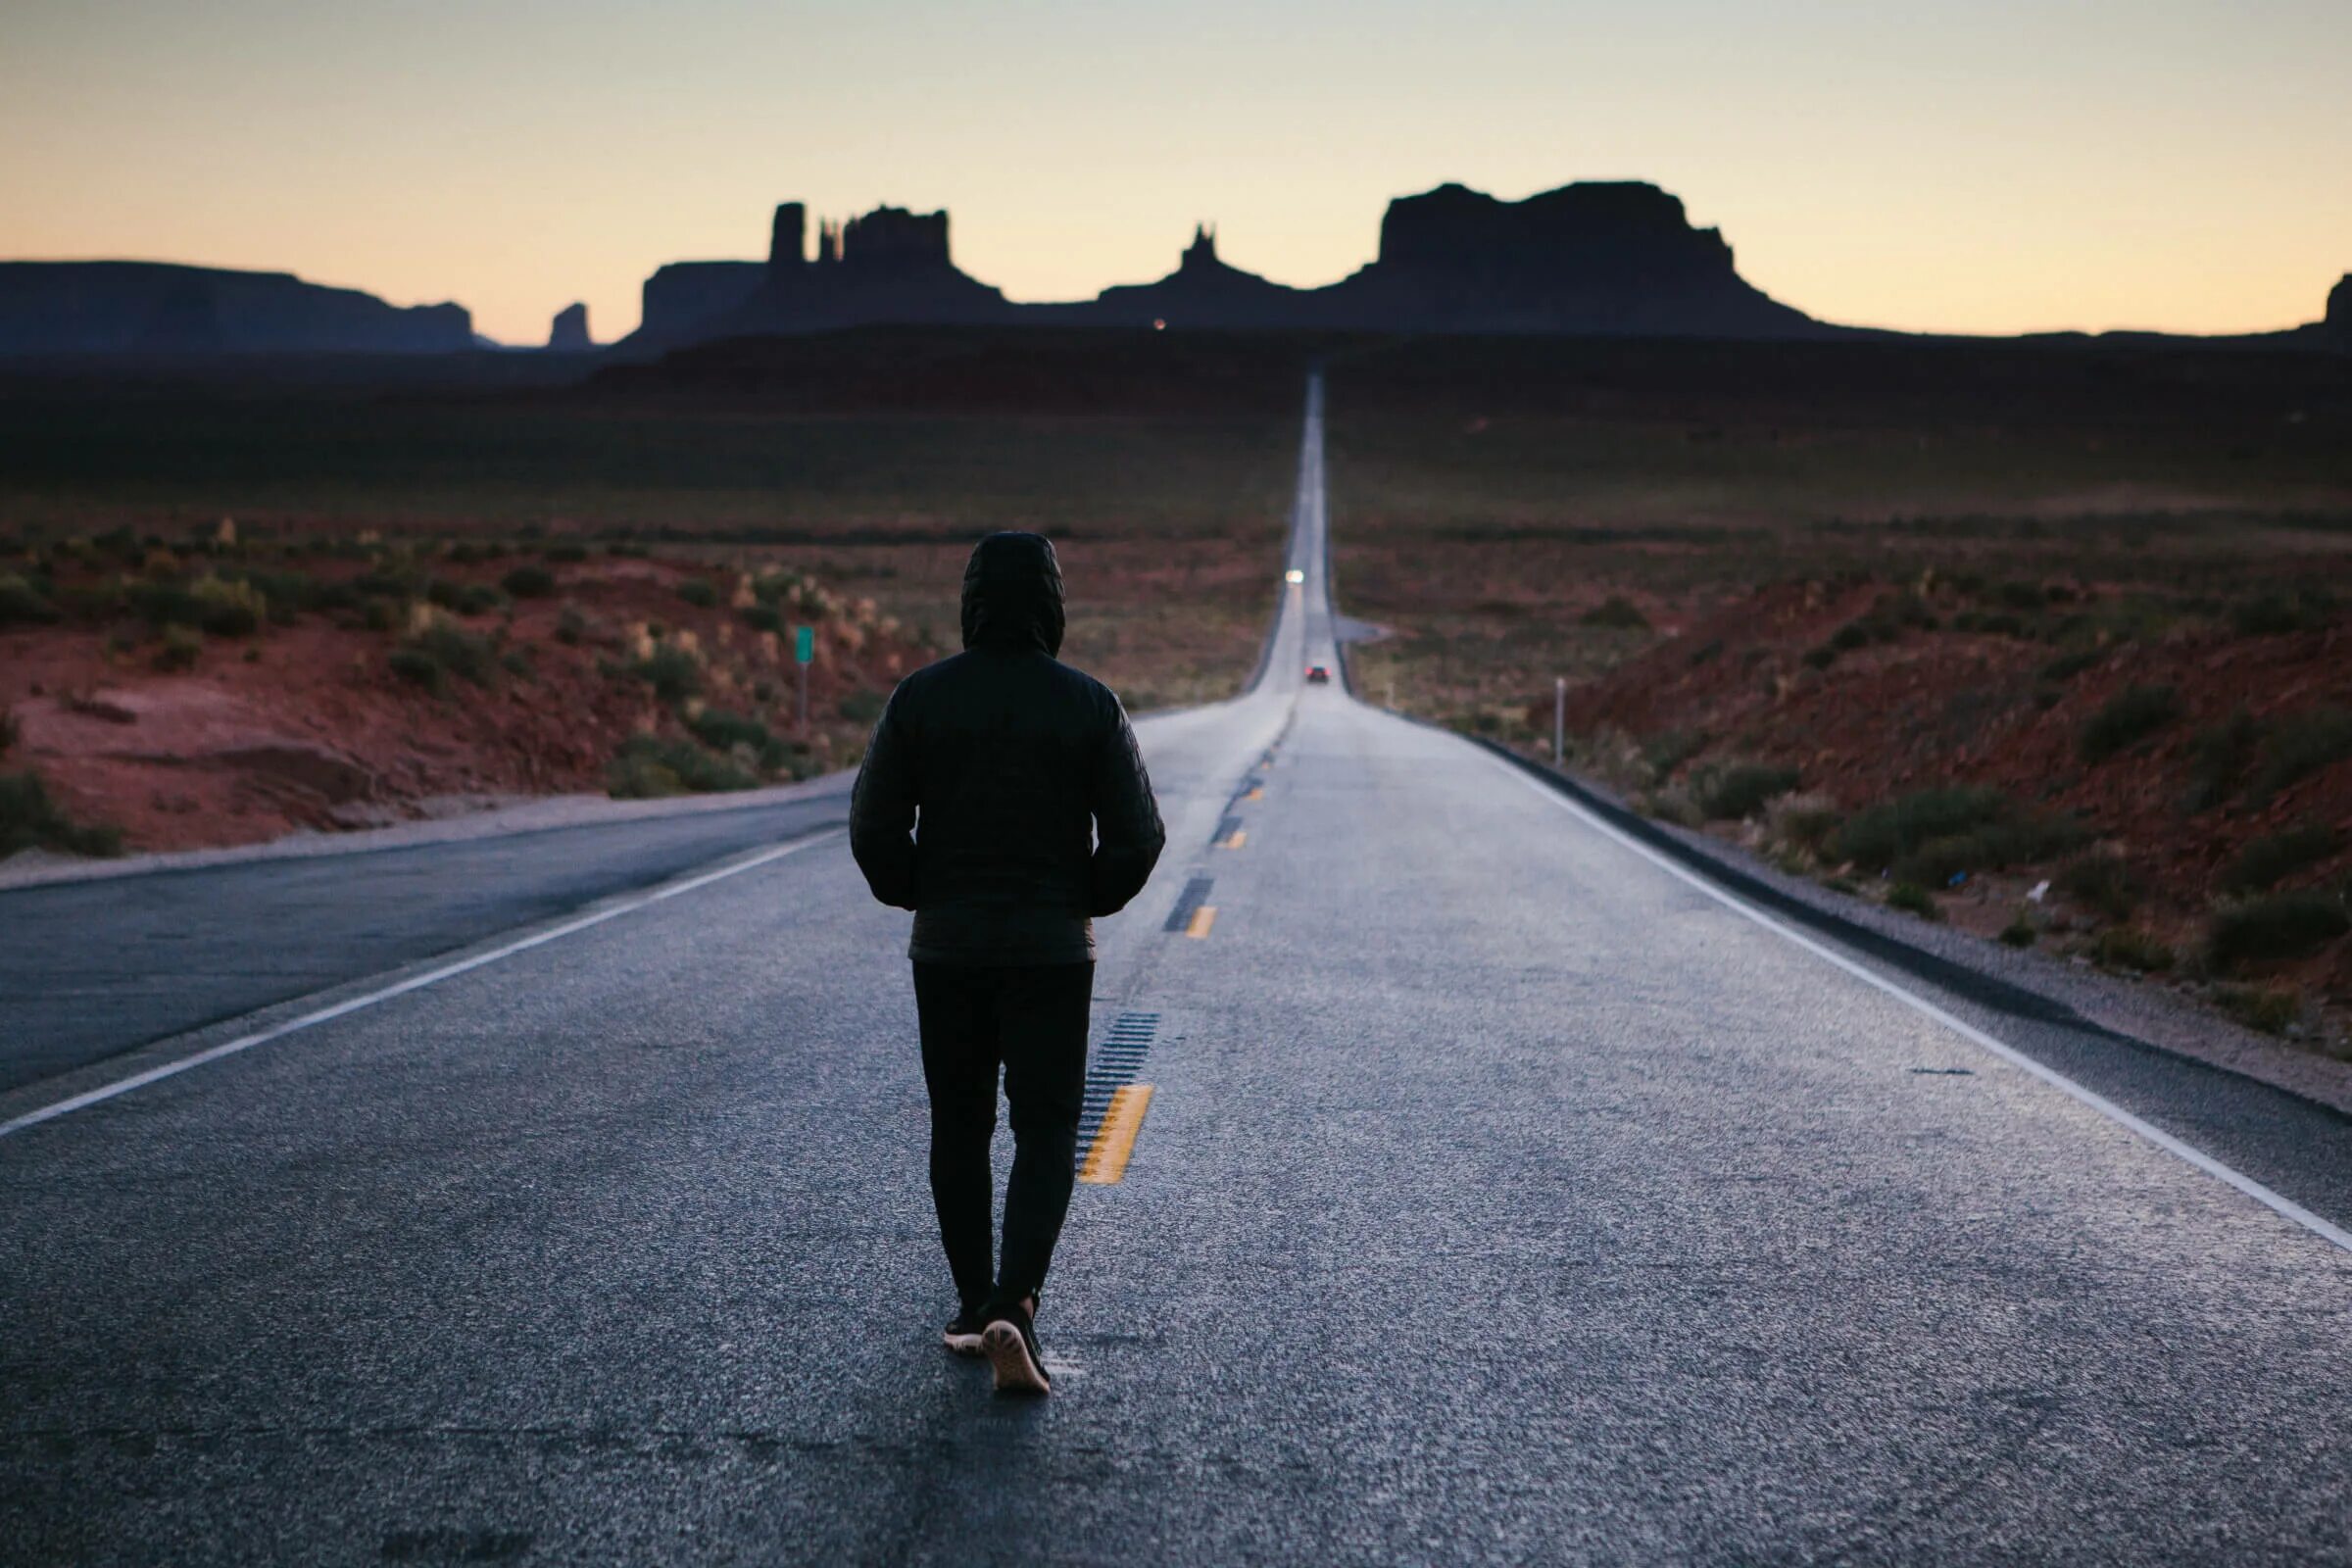 Life is a trip. Человек идет по дороге. Одинокий человек на дороге. Уходит в закат. Парень идет по дороге.